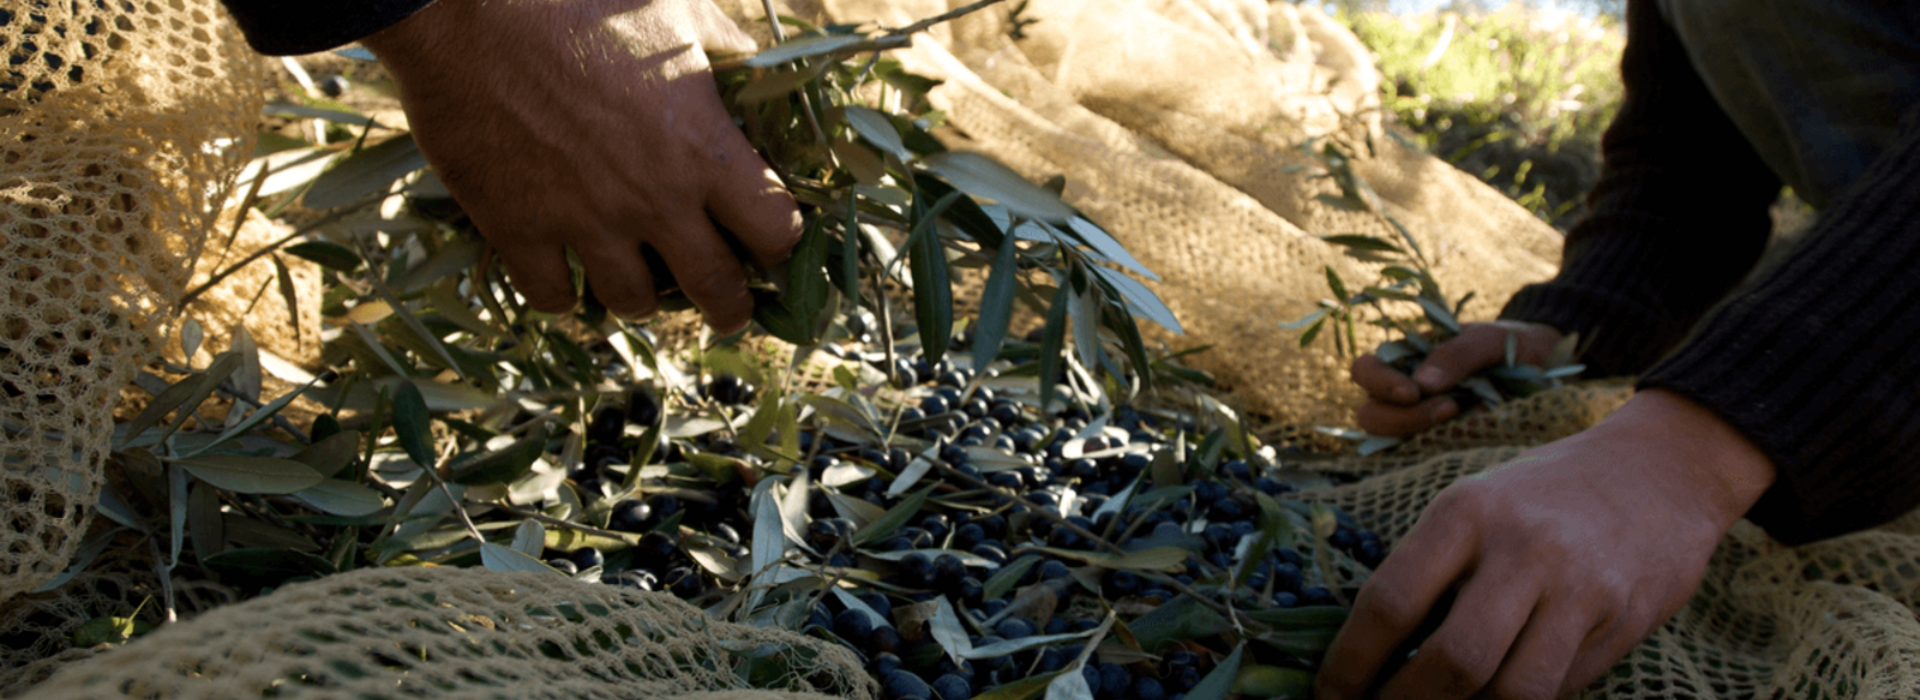 Raccolta olive al frantoio Buonamici